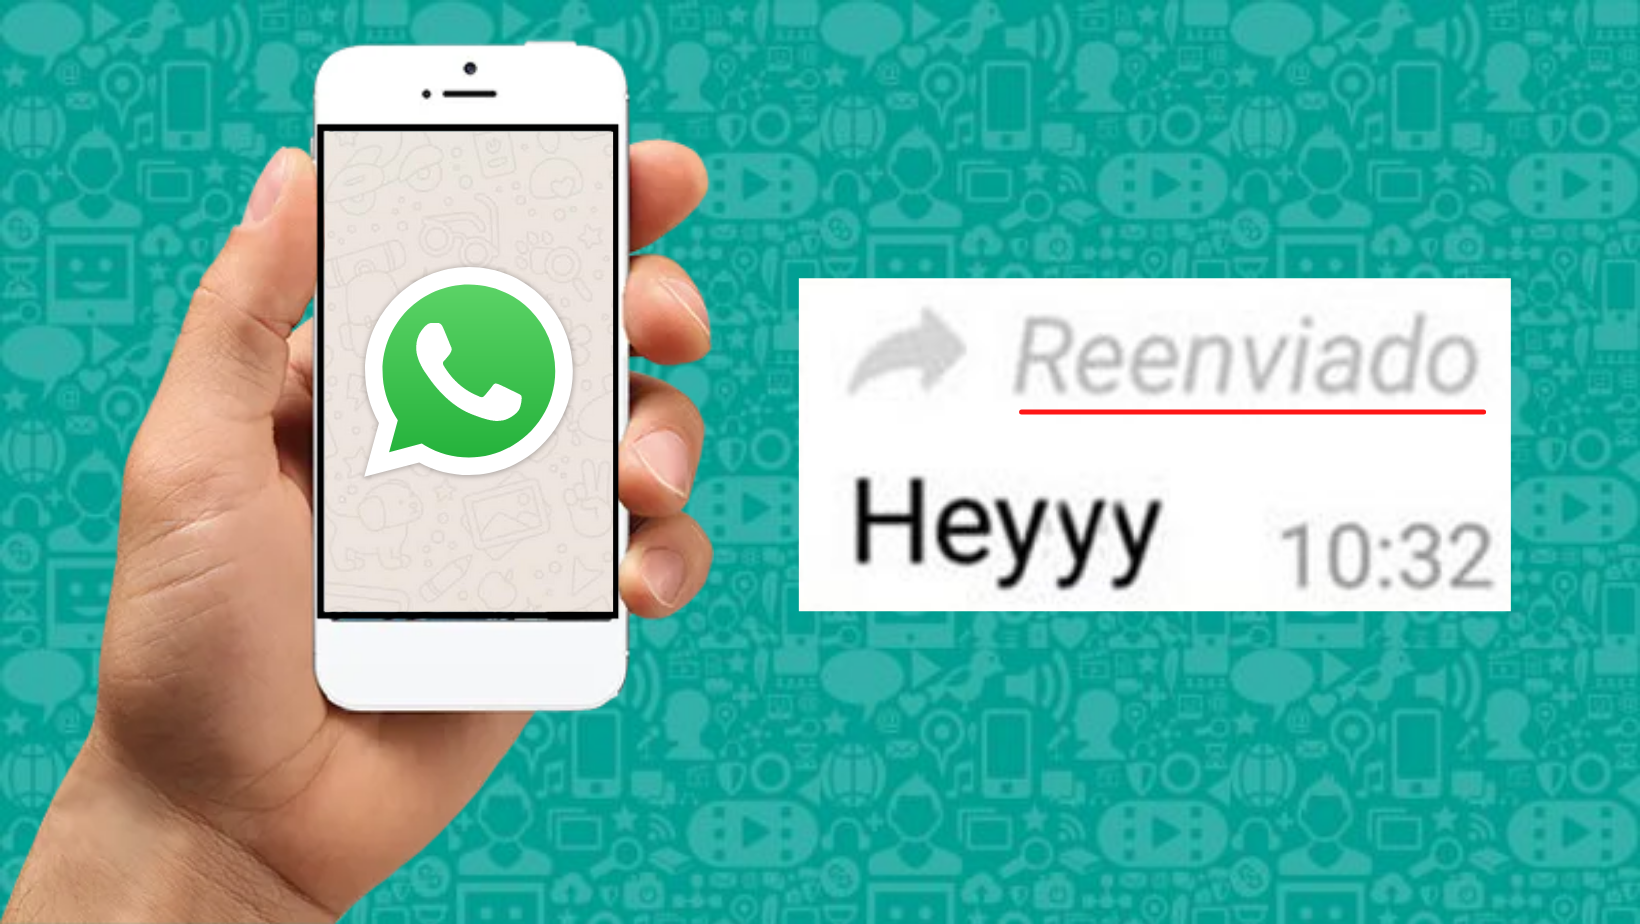 Truco De Whatsapp Así Puedes Reenviar Un Mensaje Sin Que Aparezca La Etiqueta De Reenviado 2642